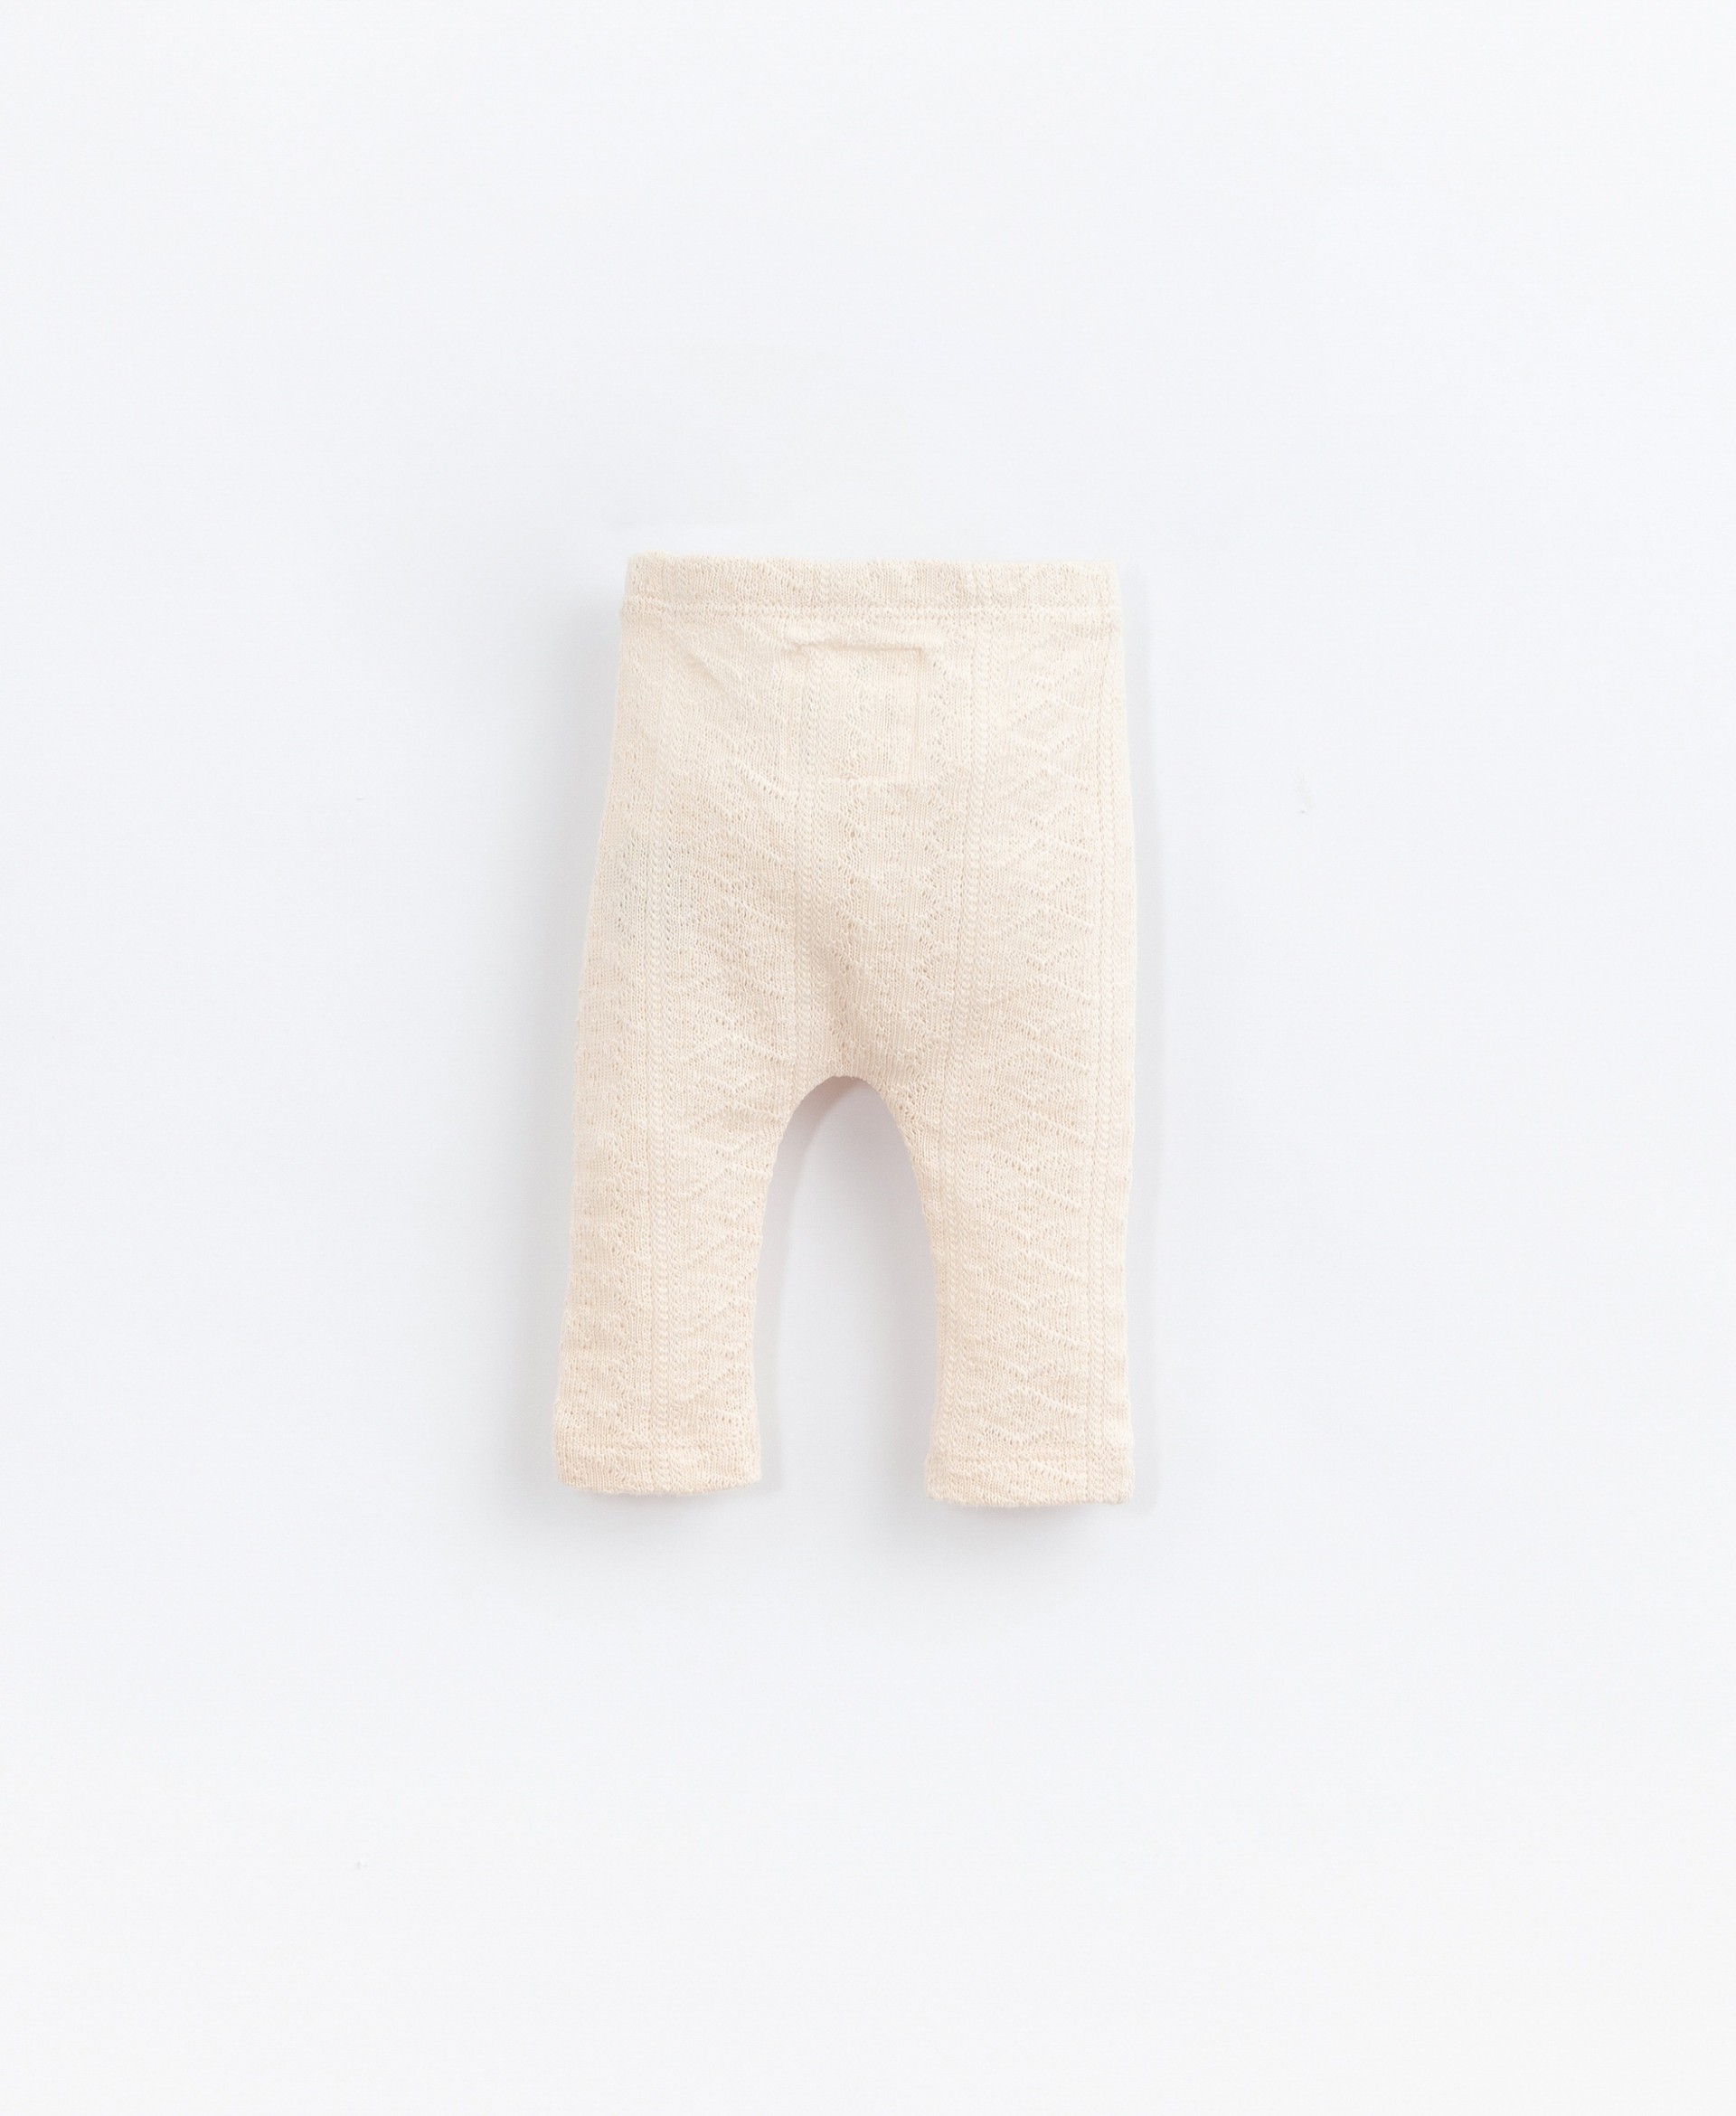 Completo maglia e pantaloni in cotone biologico| Basketry